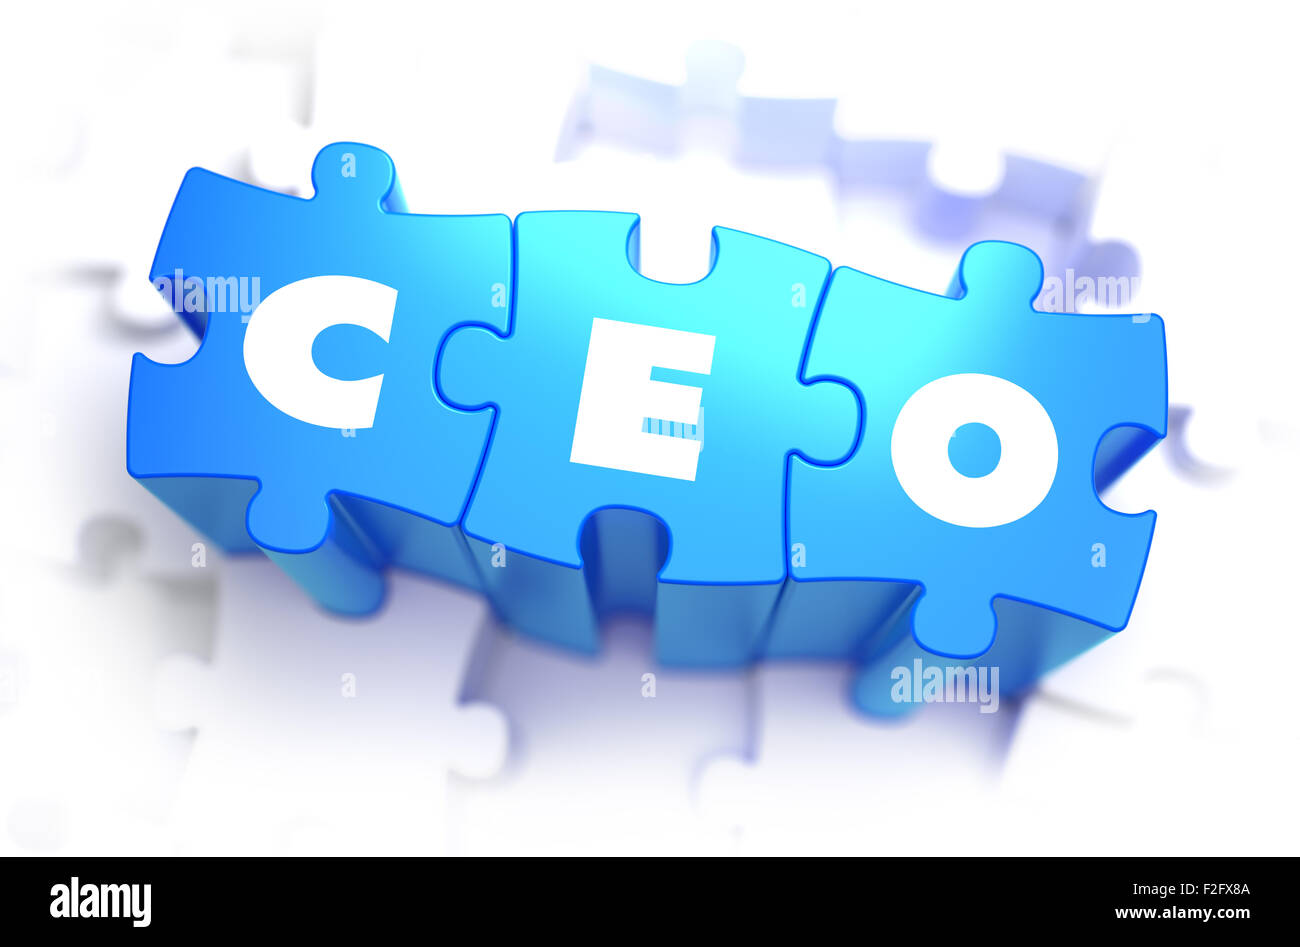 CEO - Chief Executive Officer - weiß Wort auf blauen Rätsel auf weißem Hintergrund. 3D Illustration. Stockfoto